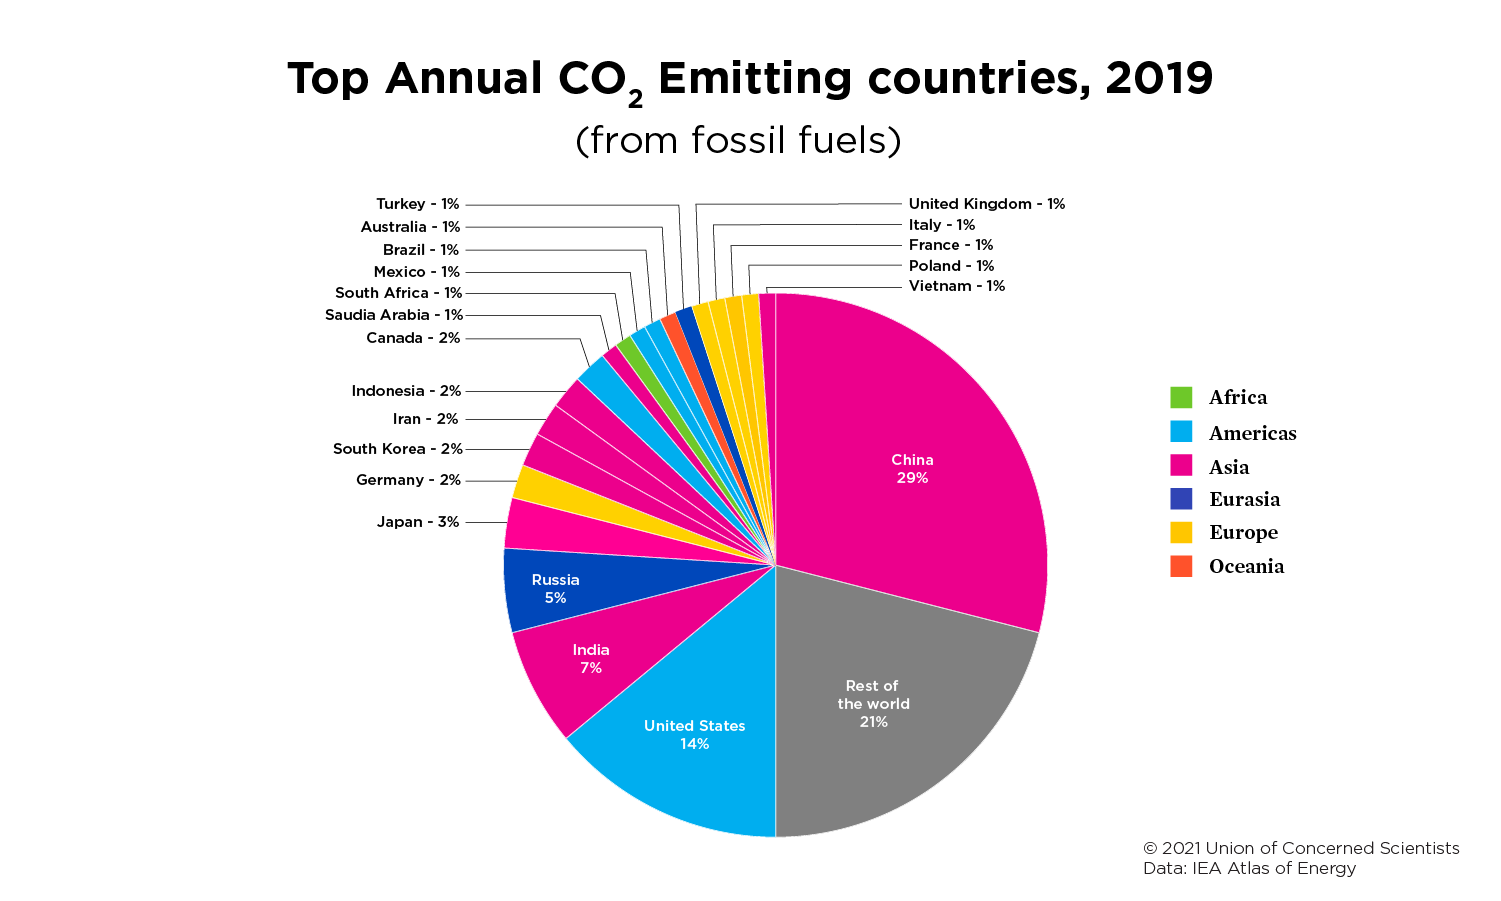 Круговая диаграмма, показывающая страны с наибольшим годовым уровнем выбросов CO2 в 2019 году.